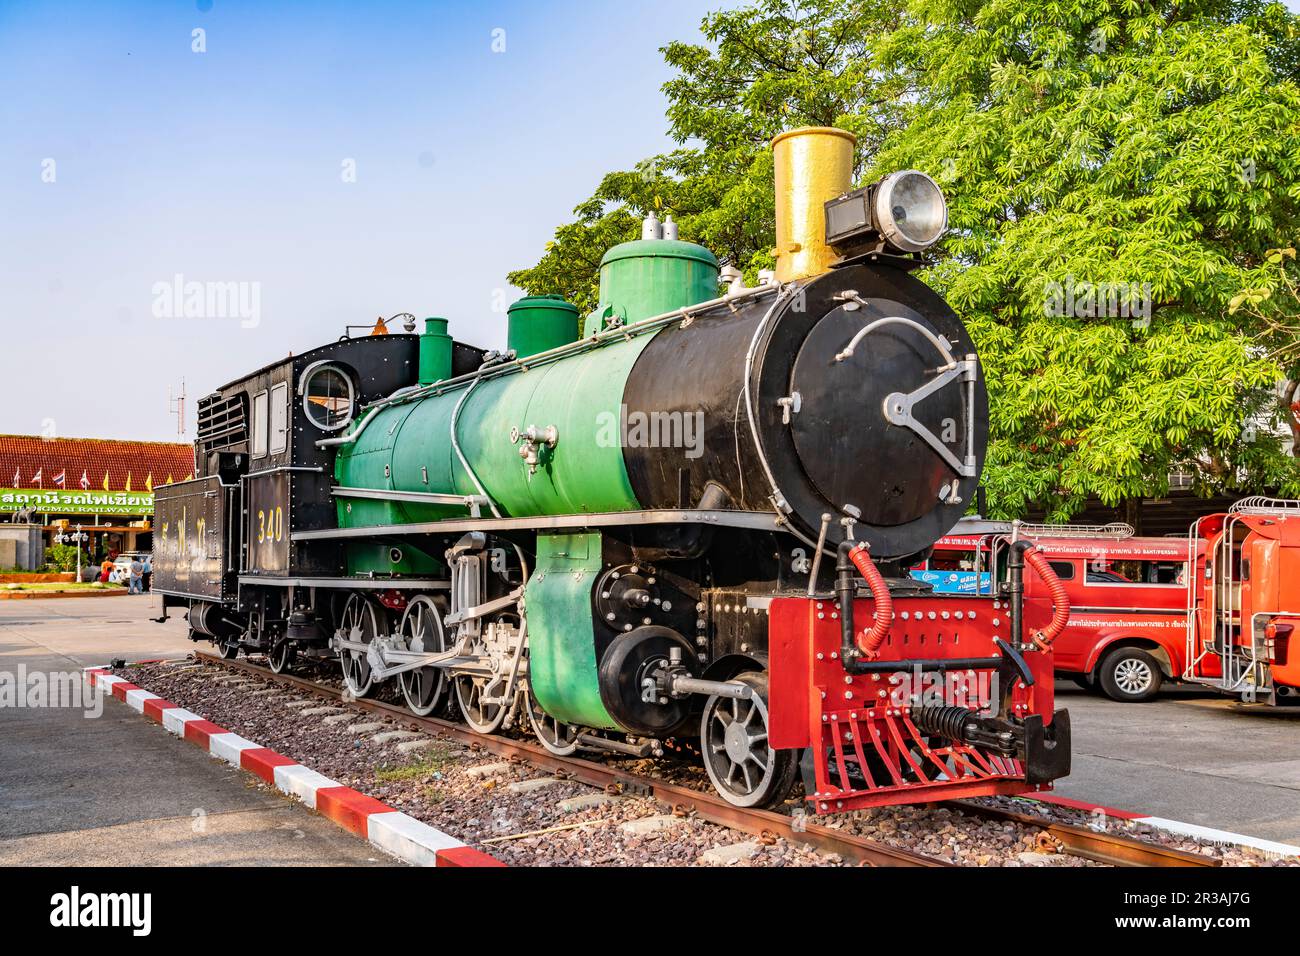 Dampflok am Bahnhof Chiang Mai, Thaïlande, Asie | locomotive à vapeur à la gare de Chiang Mai, Thaïlande, Asie Banque D'Images